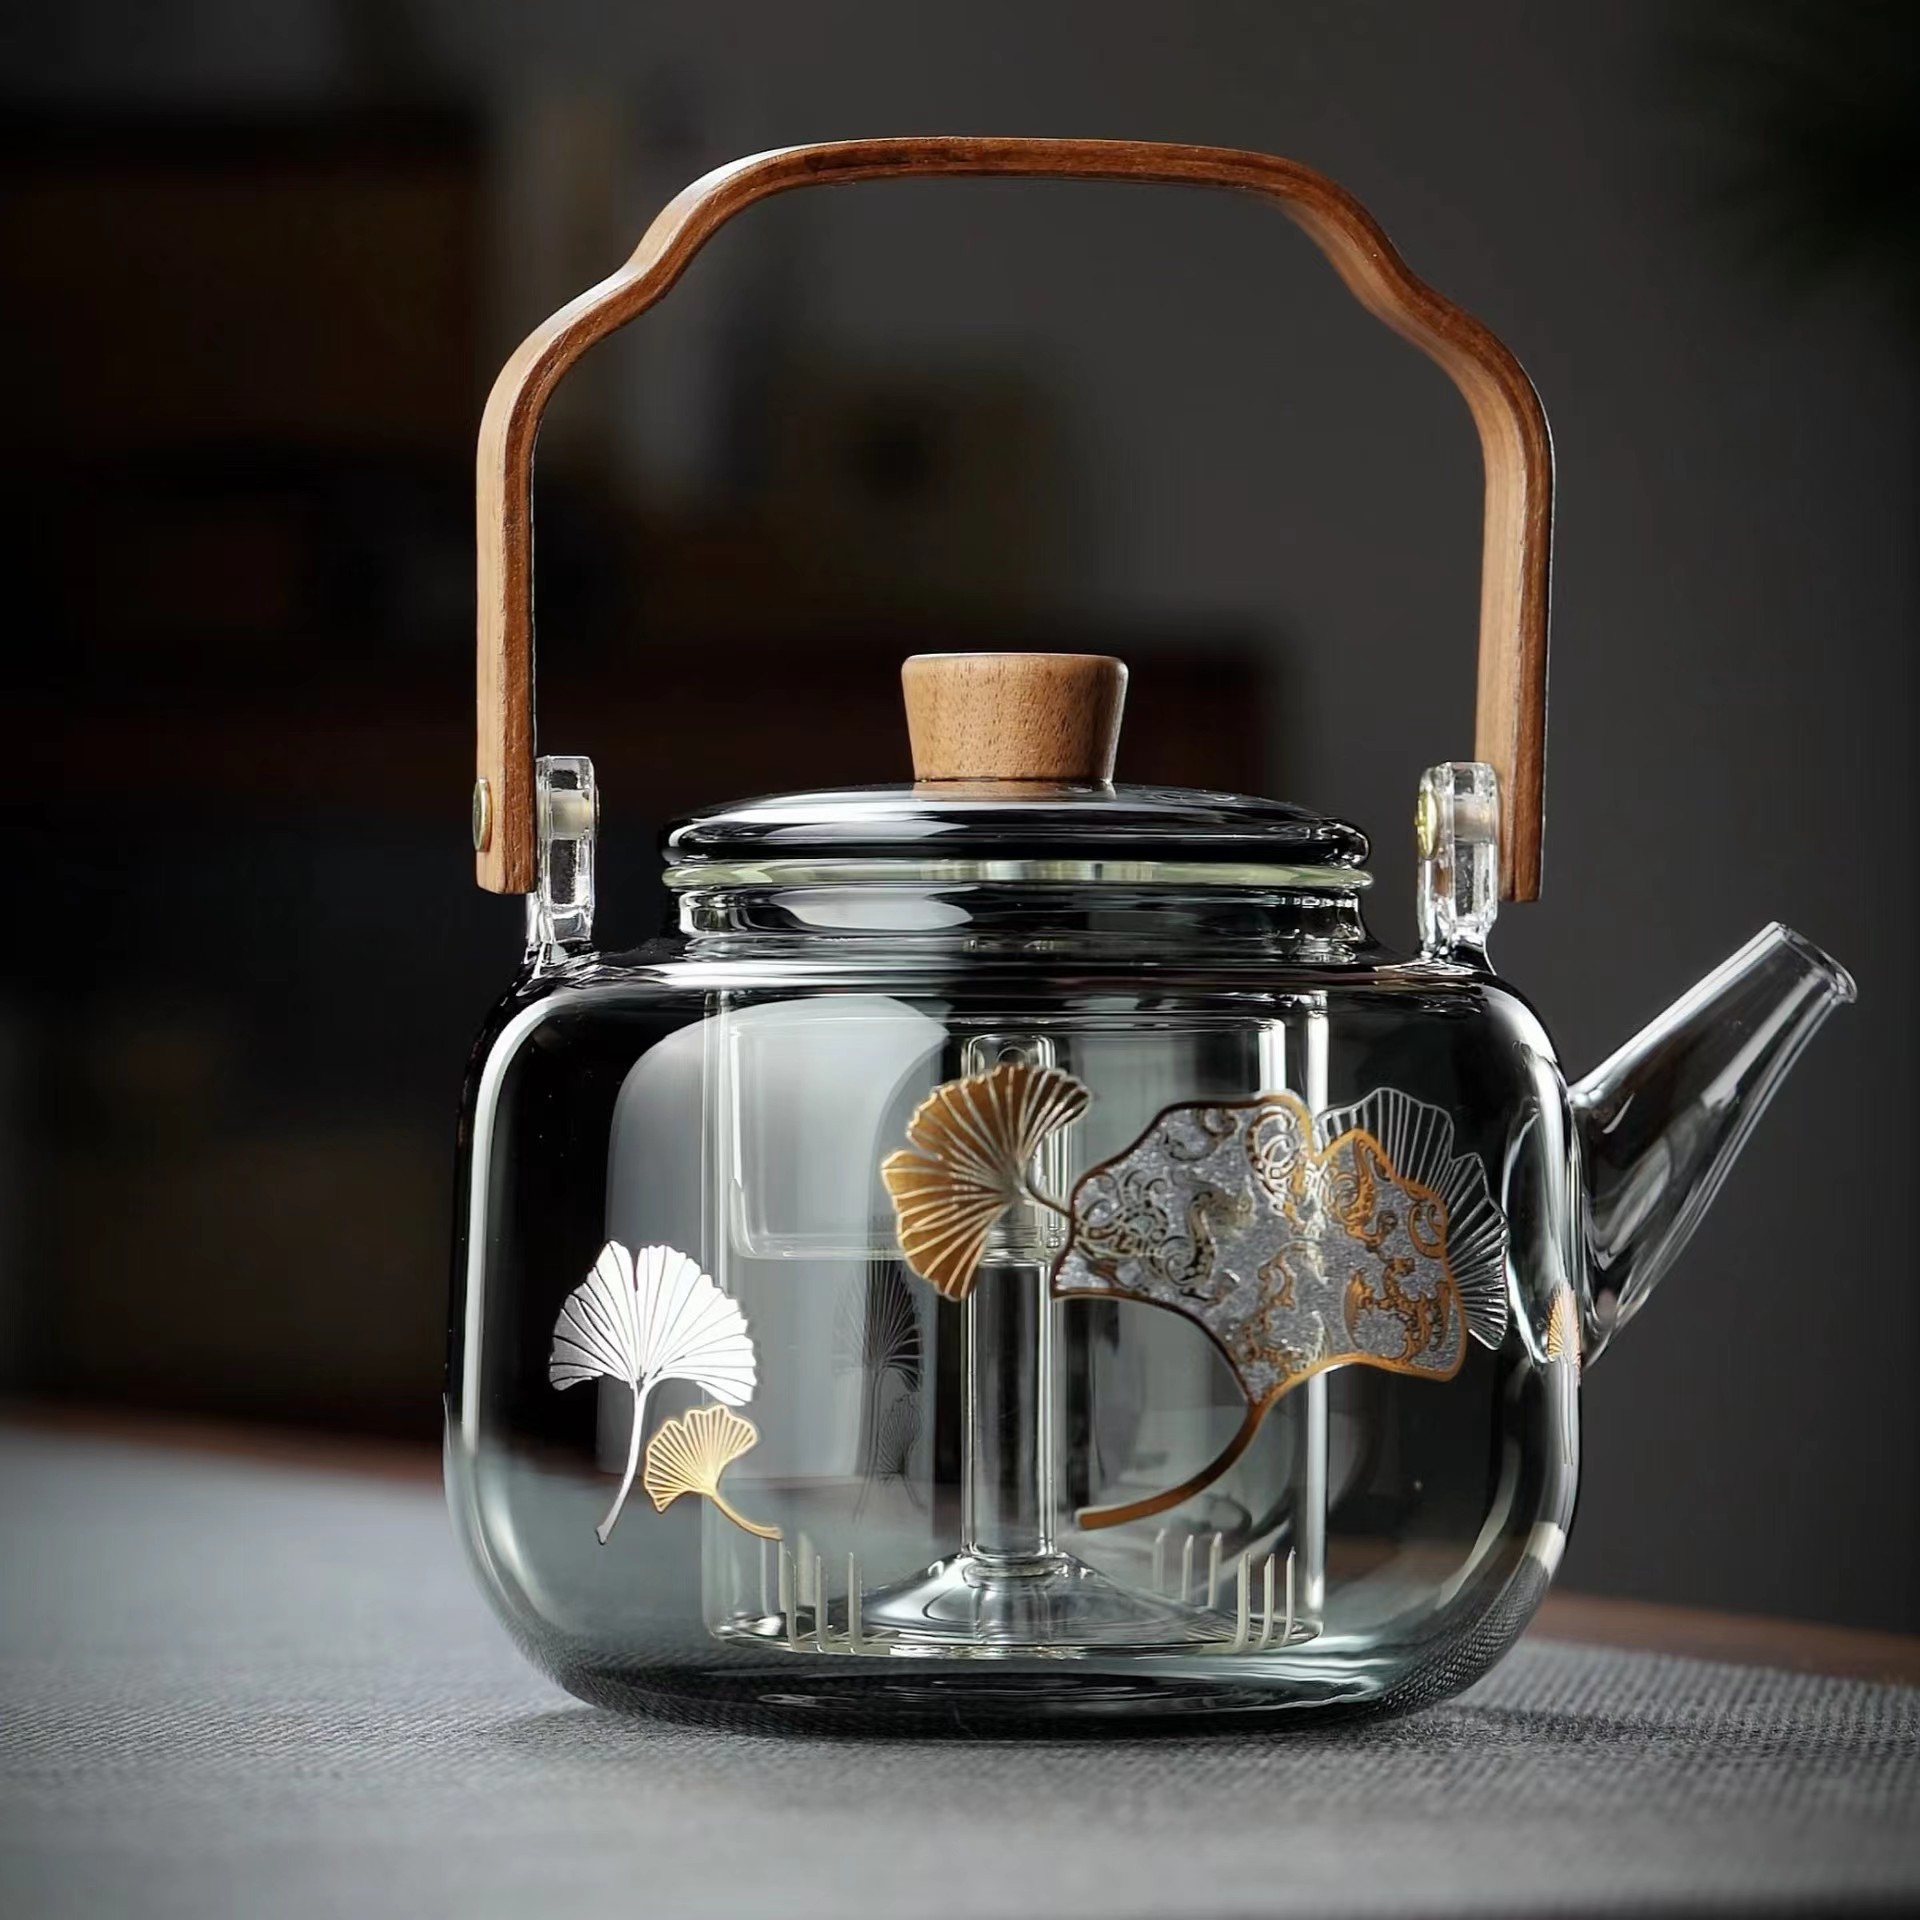 高硼硅玻璃蒸煮茶壶